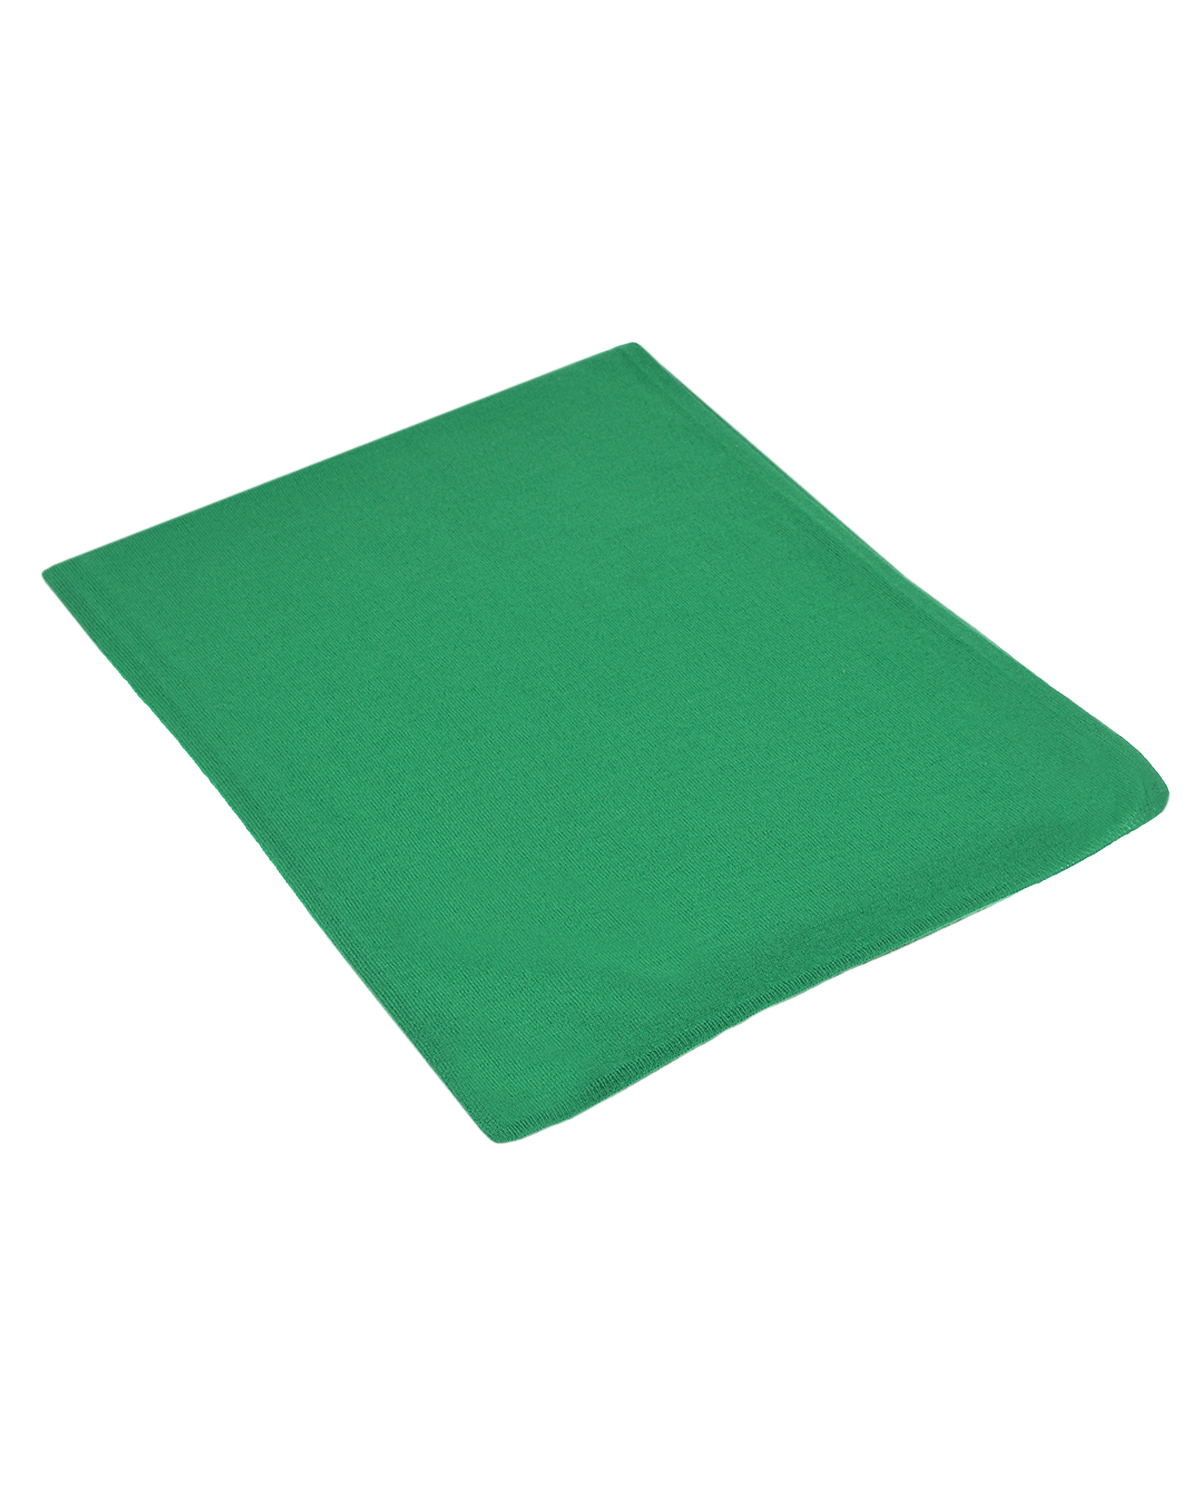 Зеленый шарф, 200x40 см Naumi детский, размер unica - фото 1